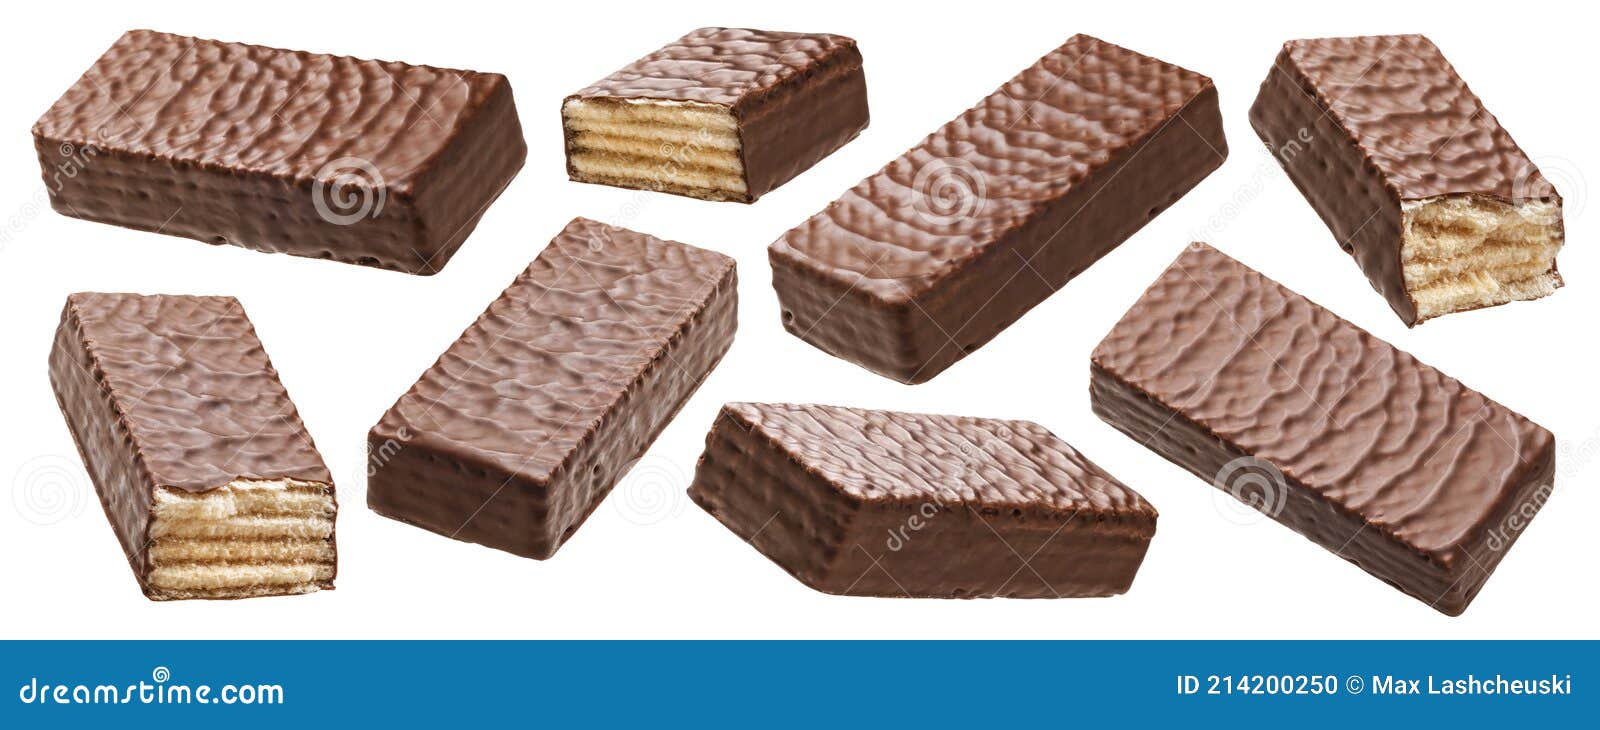 waffle chocolate bar  on white background